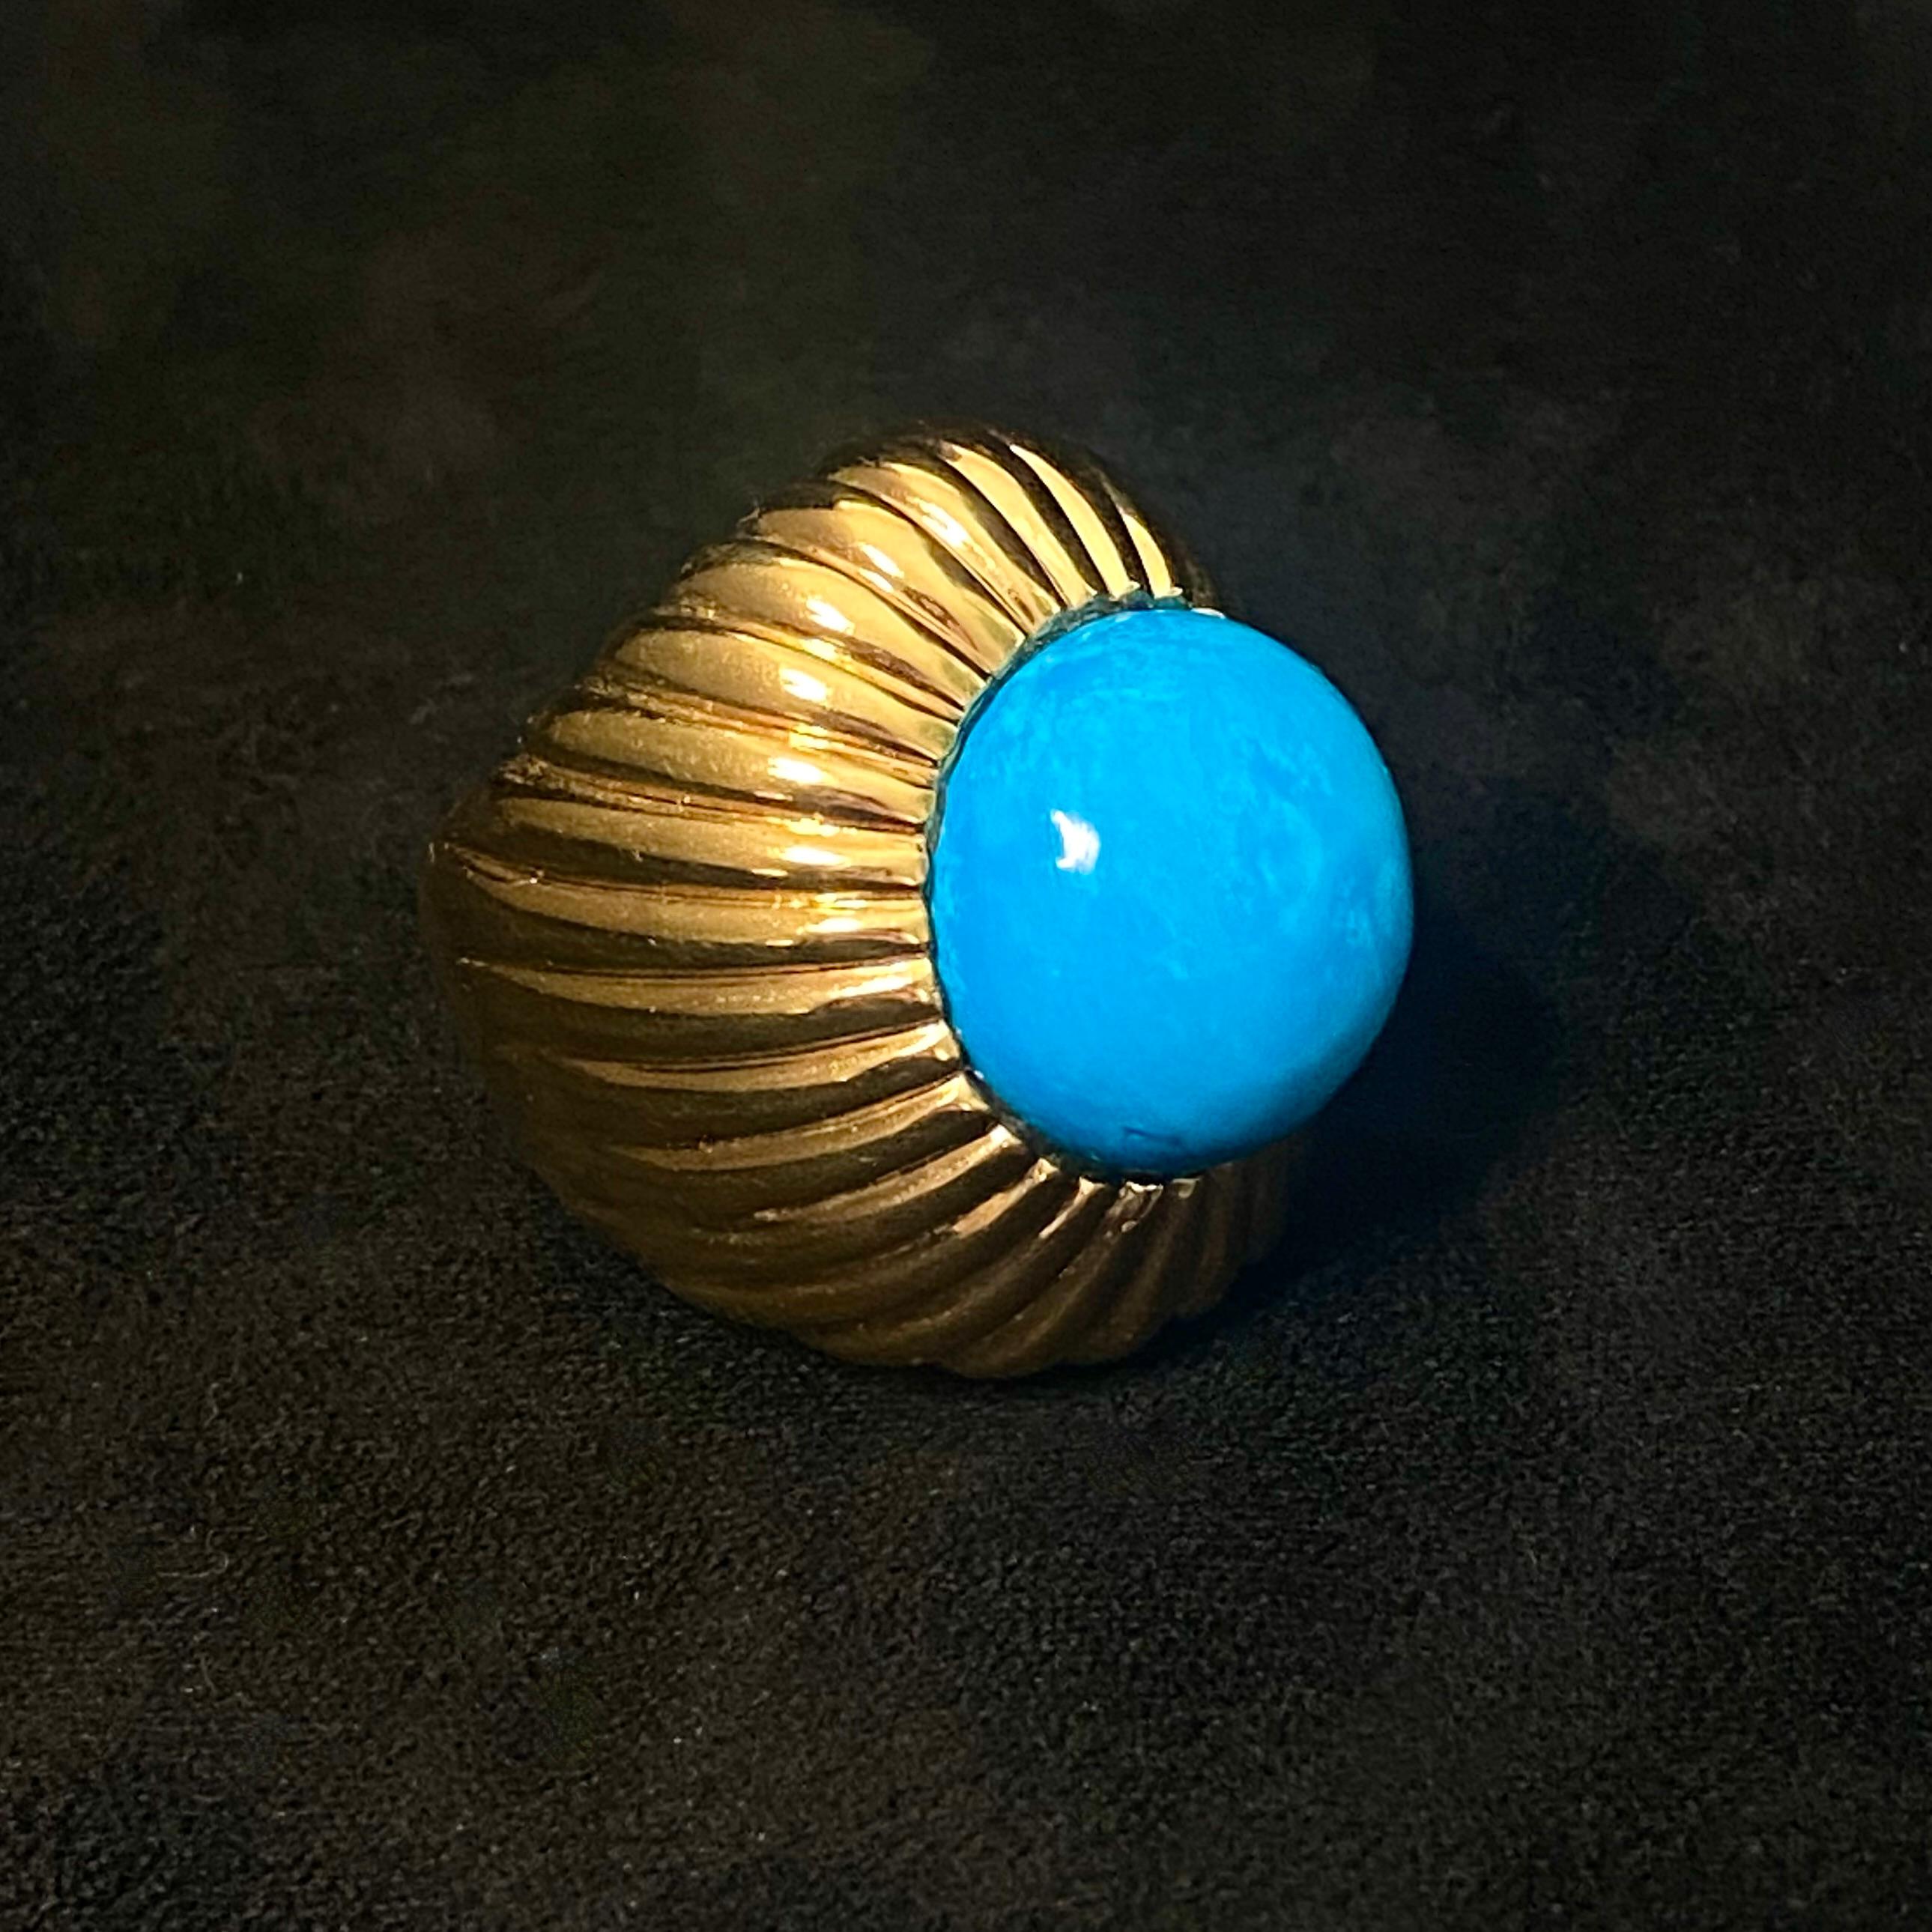 Der Begum Ring ist mit einem runden Türkis-Cabochon in einer geriffelten Fassung besetzt und ist fabelhaft dekadent und luxuriös - es ist unmöglich, beim Tragen dieses Rings keinen Cocktail zu wollen.

Inspiriert von der osmanischen Welt sind wir